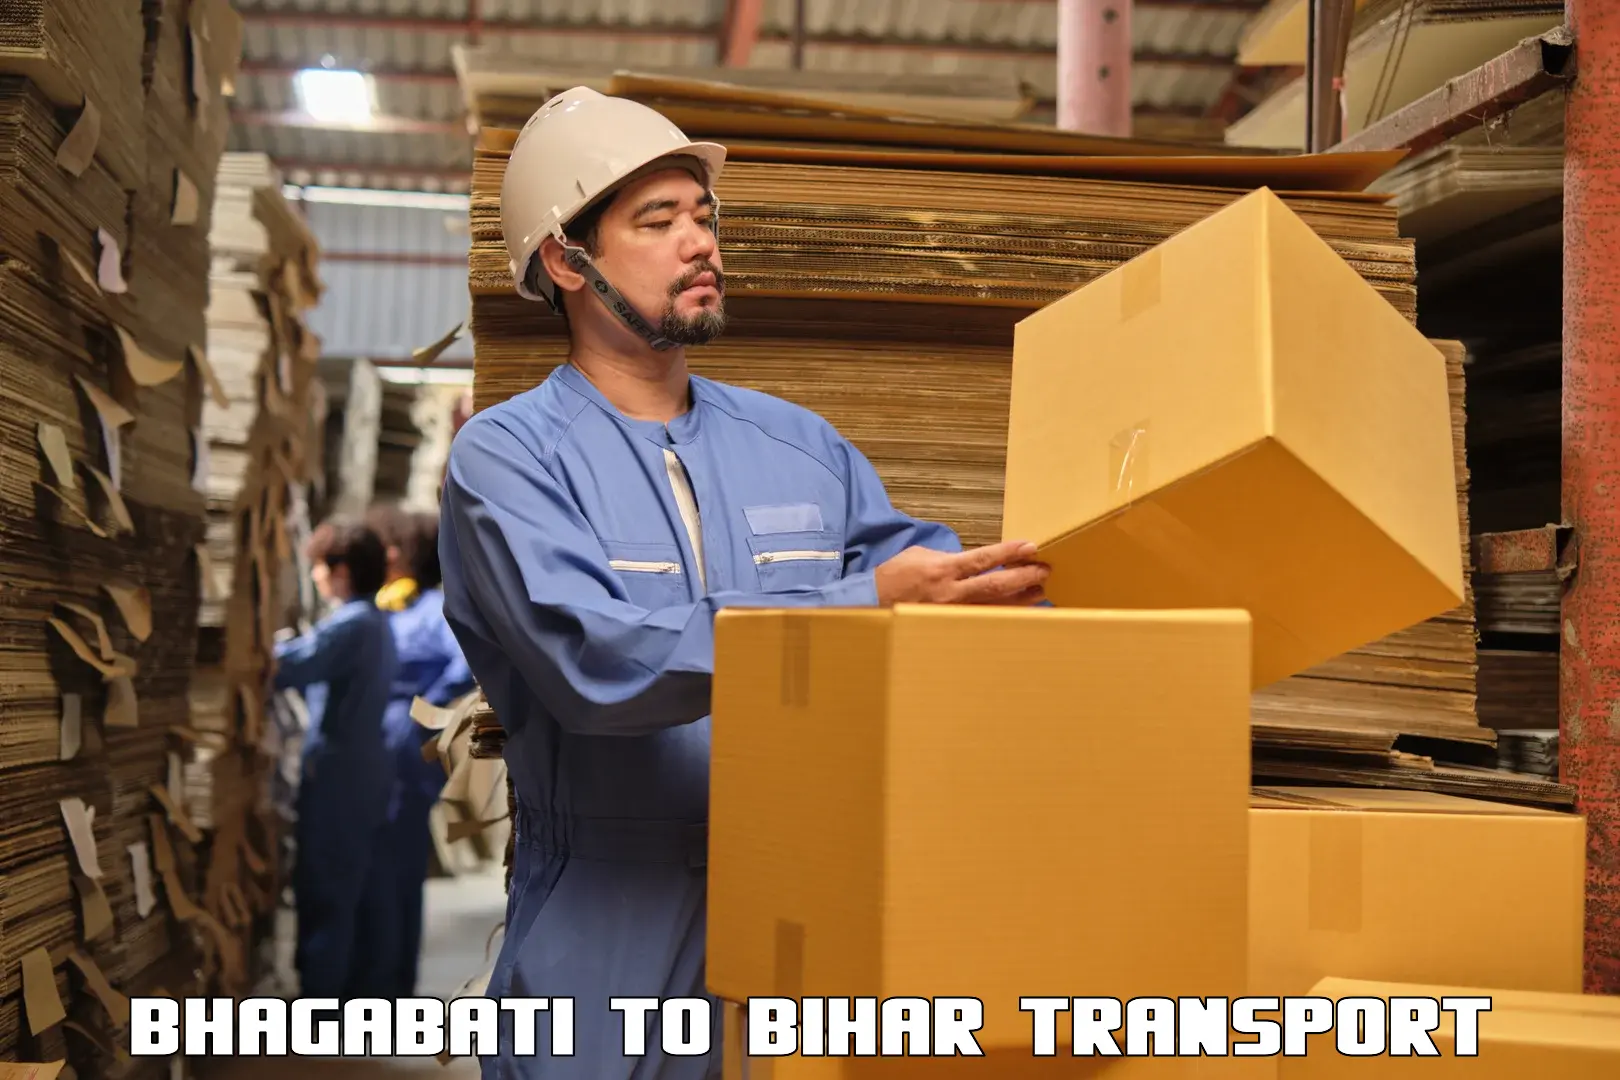 Bike shipping service Bhagabati to Sasaram